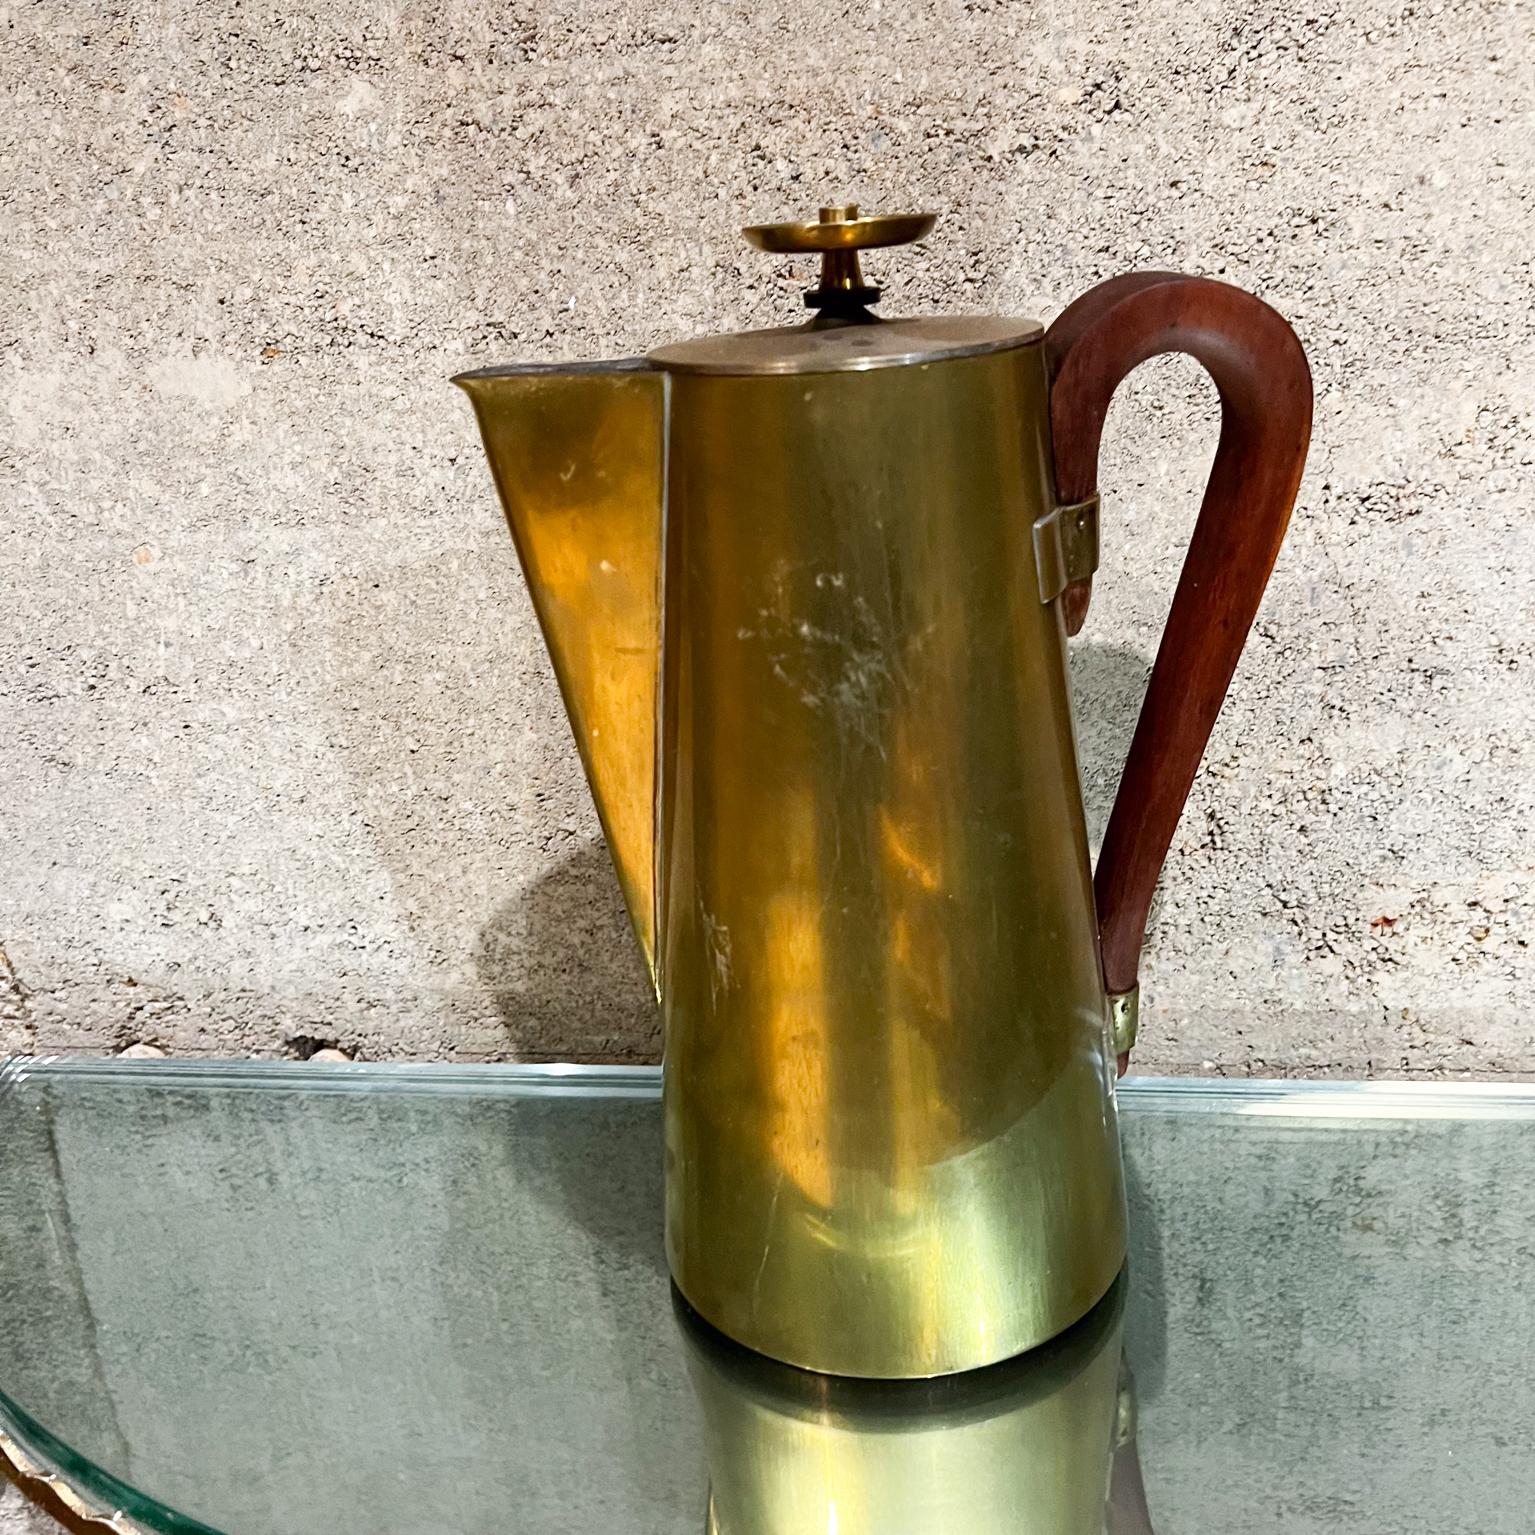 By Design/One Modern Brass Coffee Tea Service Pot with silverplate.
Poignée sculpturale en bois de noyer.
Estampillé Dorlyn Silversmiths.
12 de haut x 8,5 de profondeur x 5,5 de diamètre
Etat d'origine vintage non restauré avec patine